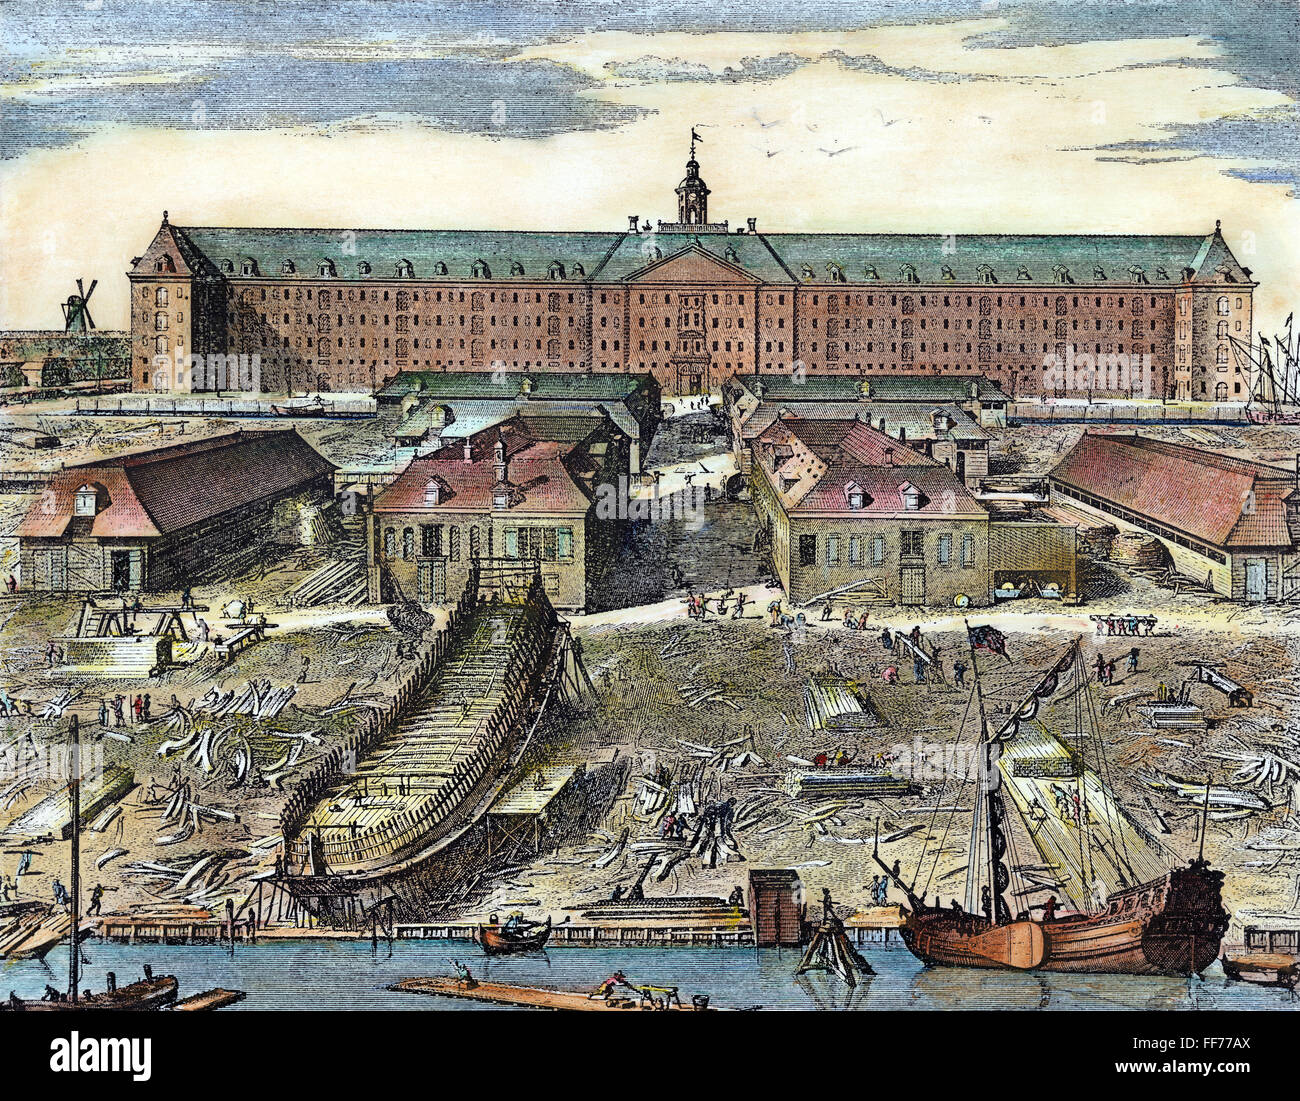 DUTCH EAST INDIA COMPANY. /NWharf et chantier de construction navale de la Dutch East India Company à Rotterdam. Gravure sur cuivre, 1694, par J. Mulder. Banque D'Images